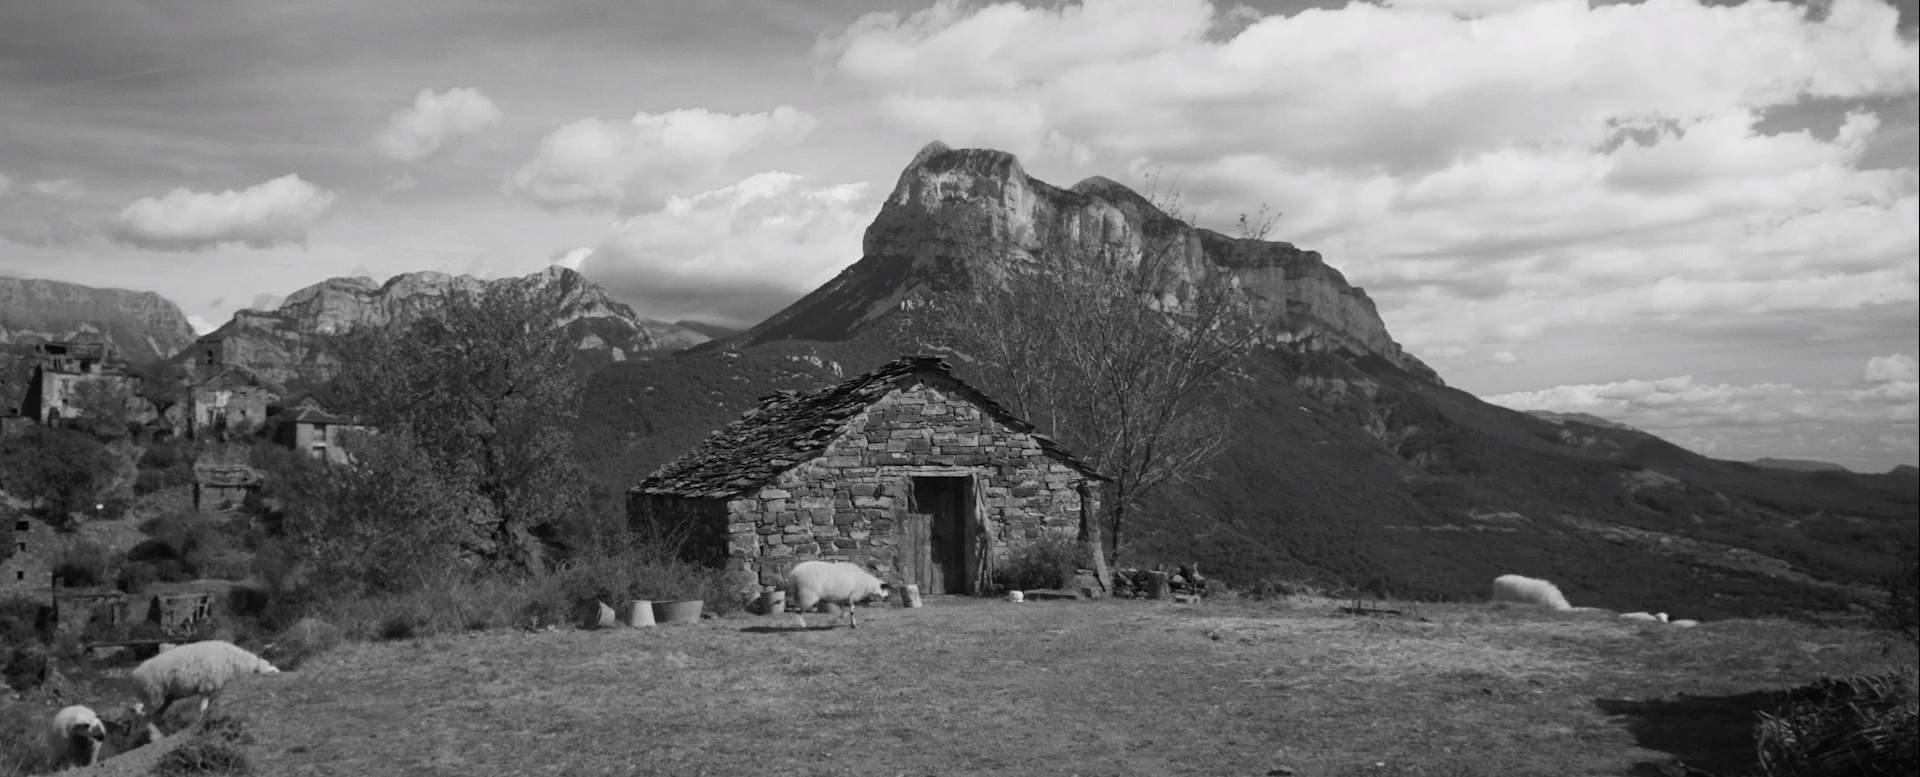 Cena do filme Armugan, em preto e branco. Vemos uma cabana em uma região isolada, nas montanhas. Em frente dela, quatro carneiros se alimentam da vegetação no solo. Ao fundo, vemos algumas casas.